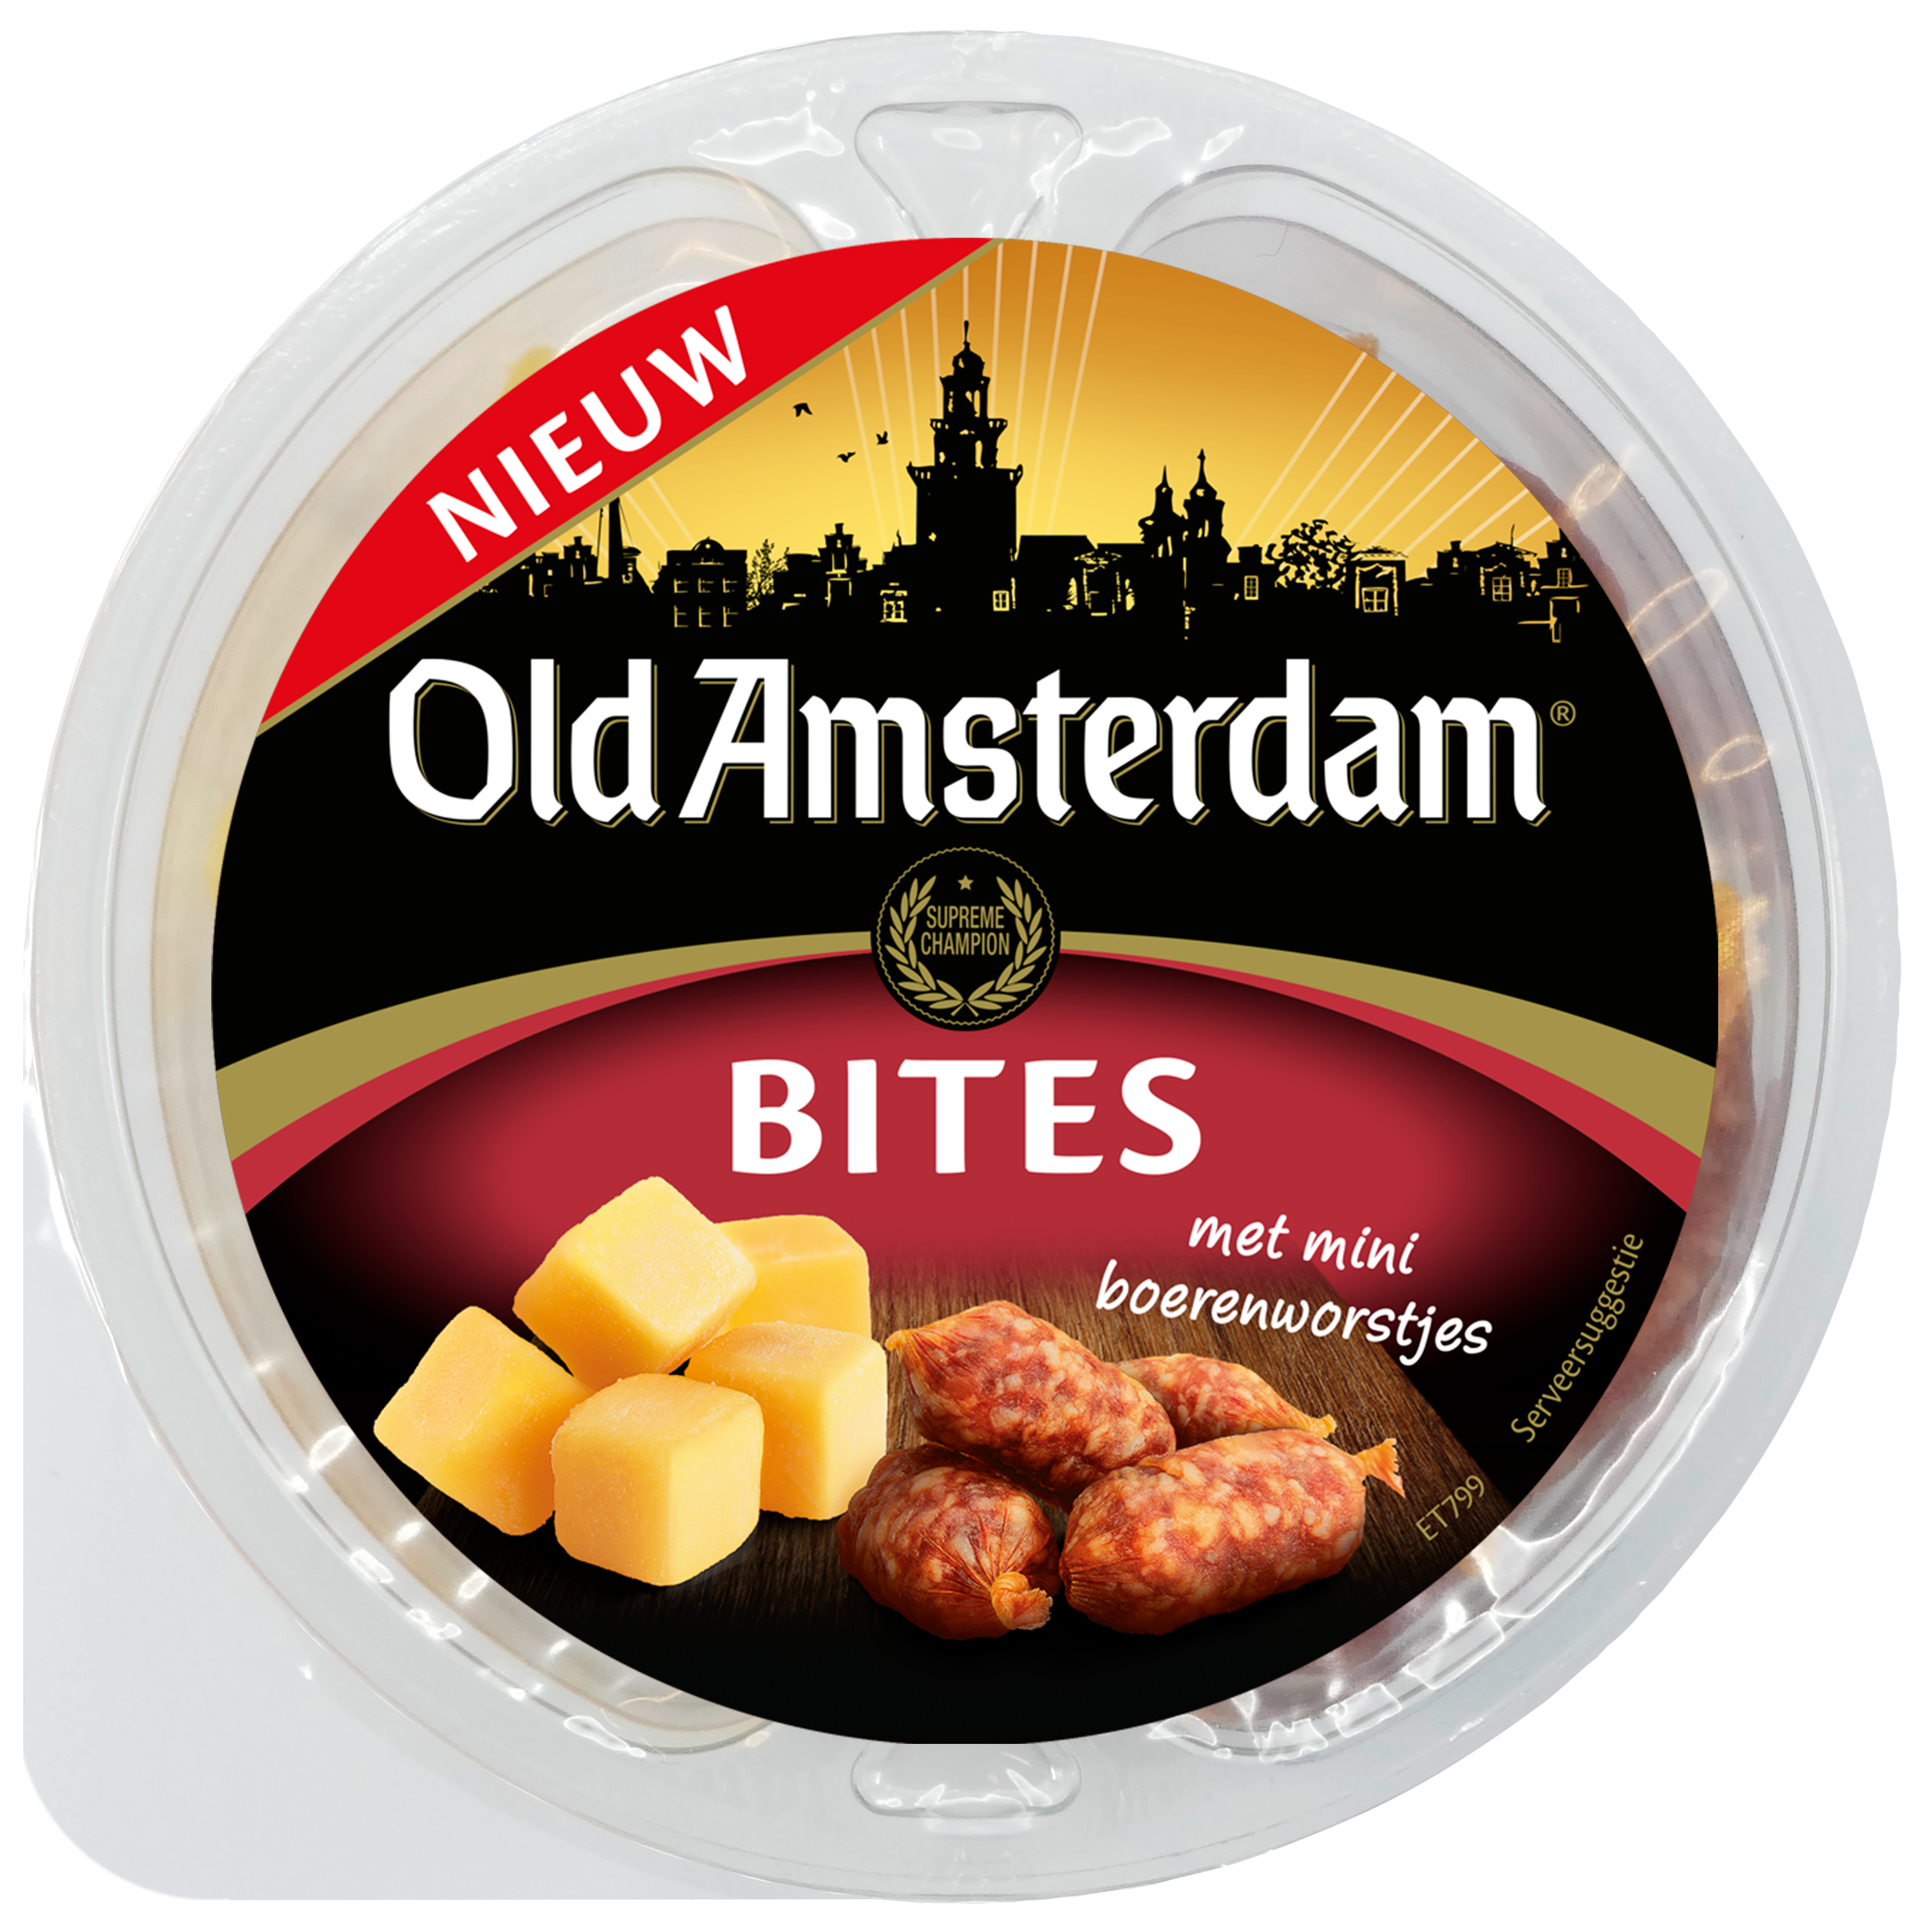 Old Amsterdam Bites met Boerenworstjes